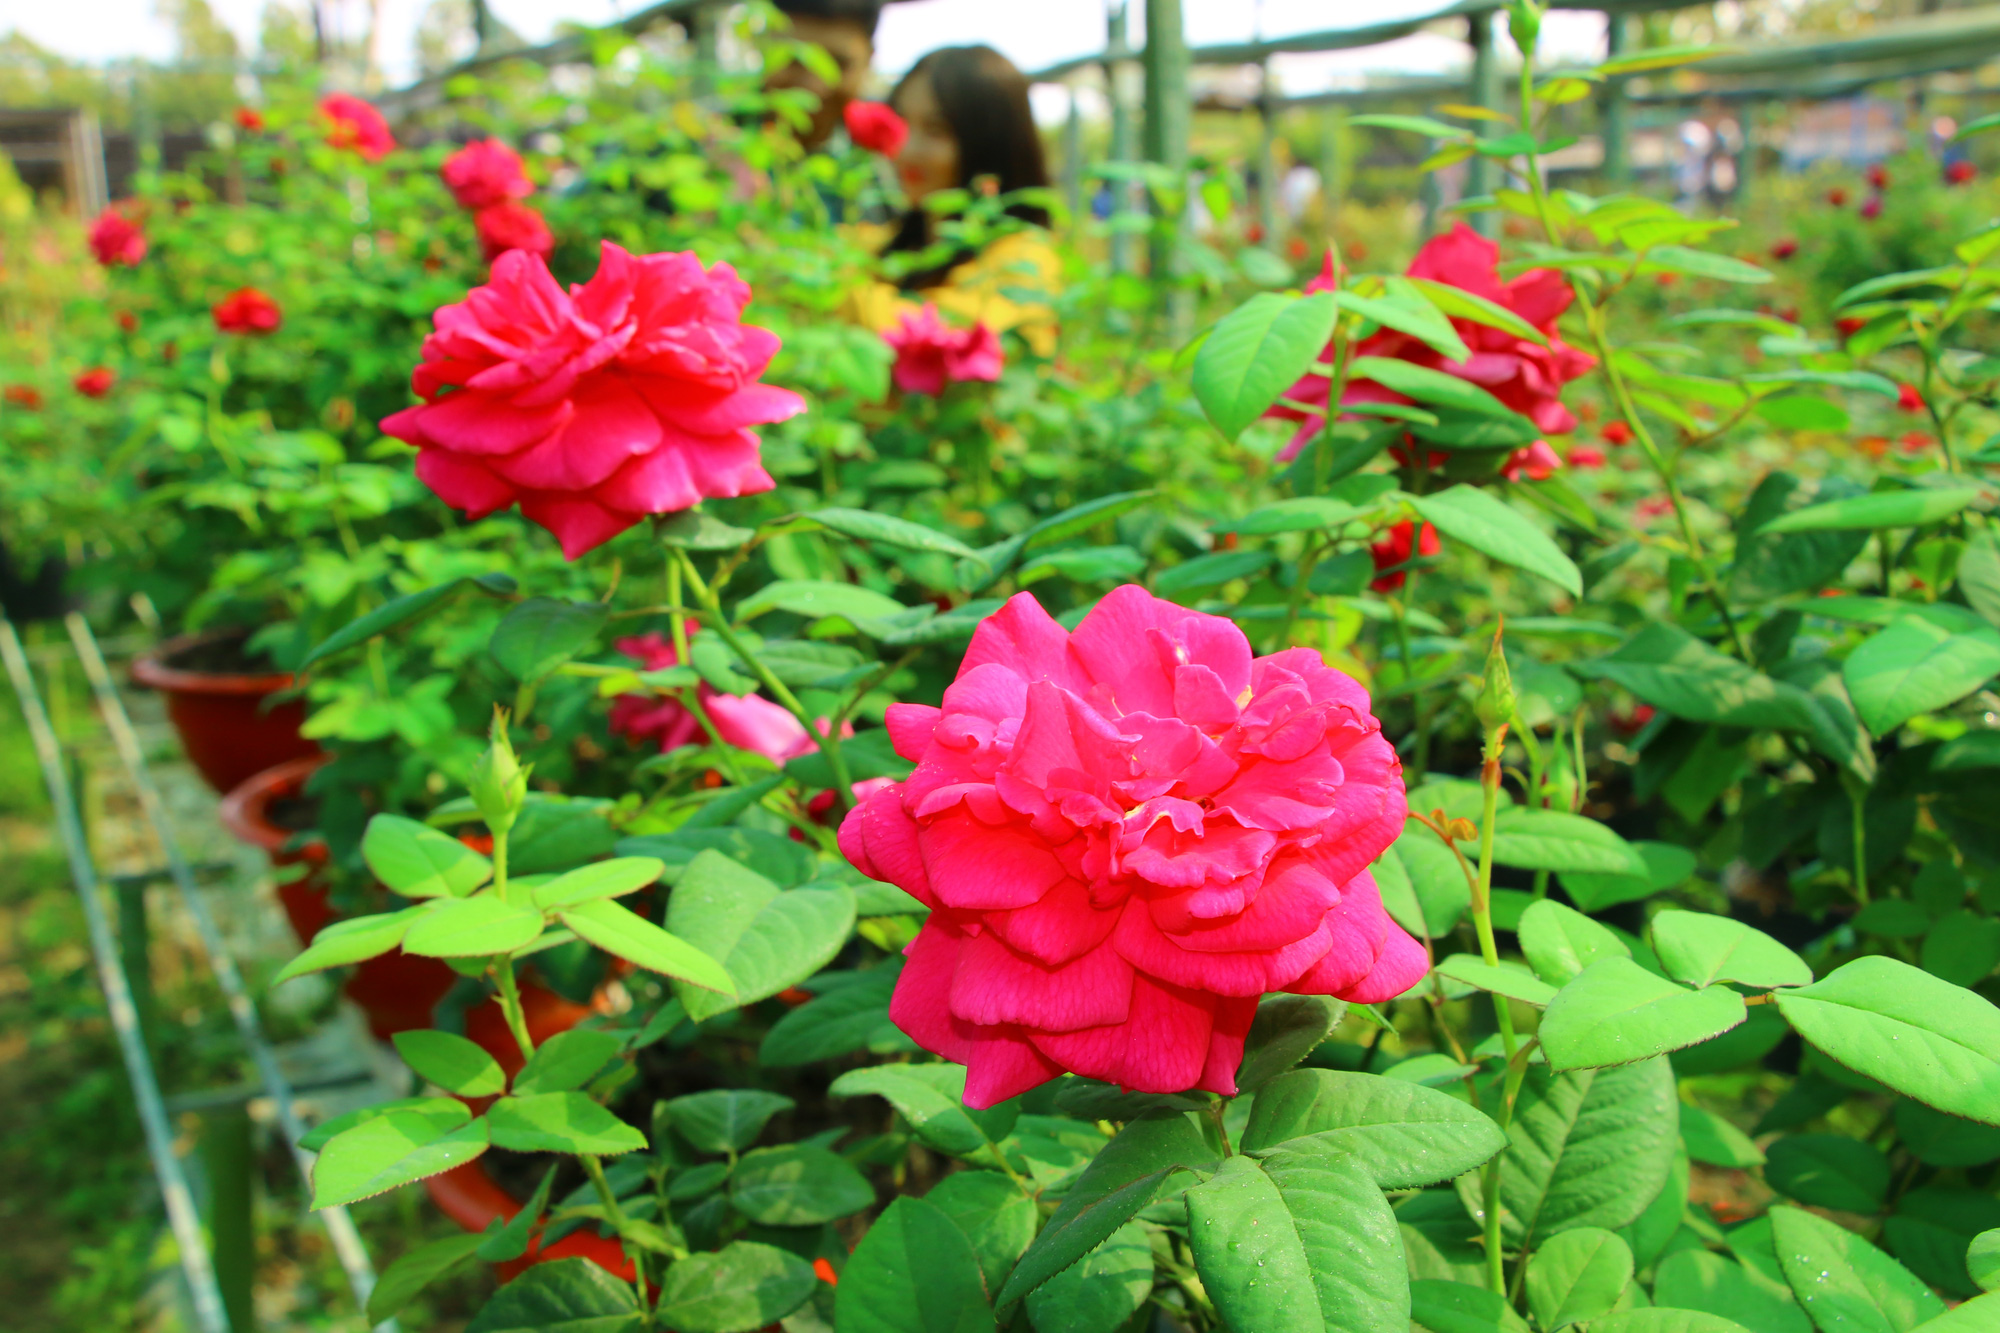 Vườn hoa hồng Pháp: Bạn yêu thích những khung cảnh thiên nhiên tươi đẹp, lung linh với những bông hoa lung linh và thơm ngát? Hãy xem hình ảnh vườn hoa hồng Pháp và để cho mình được ngập tràn trong không khí tràn đầy sức sống và tinh tế của thiên nhiên.